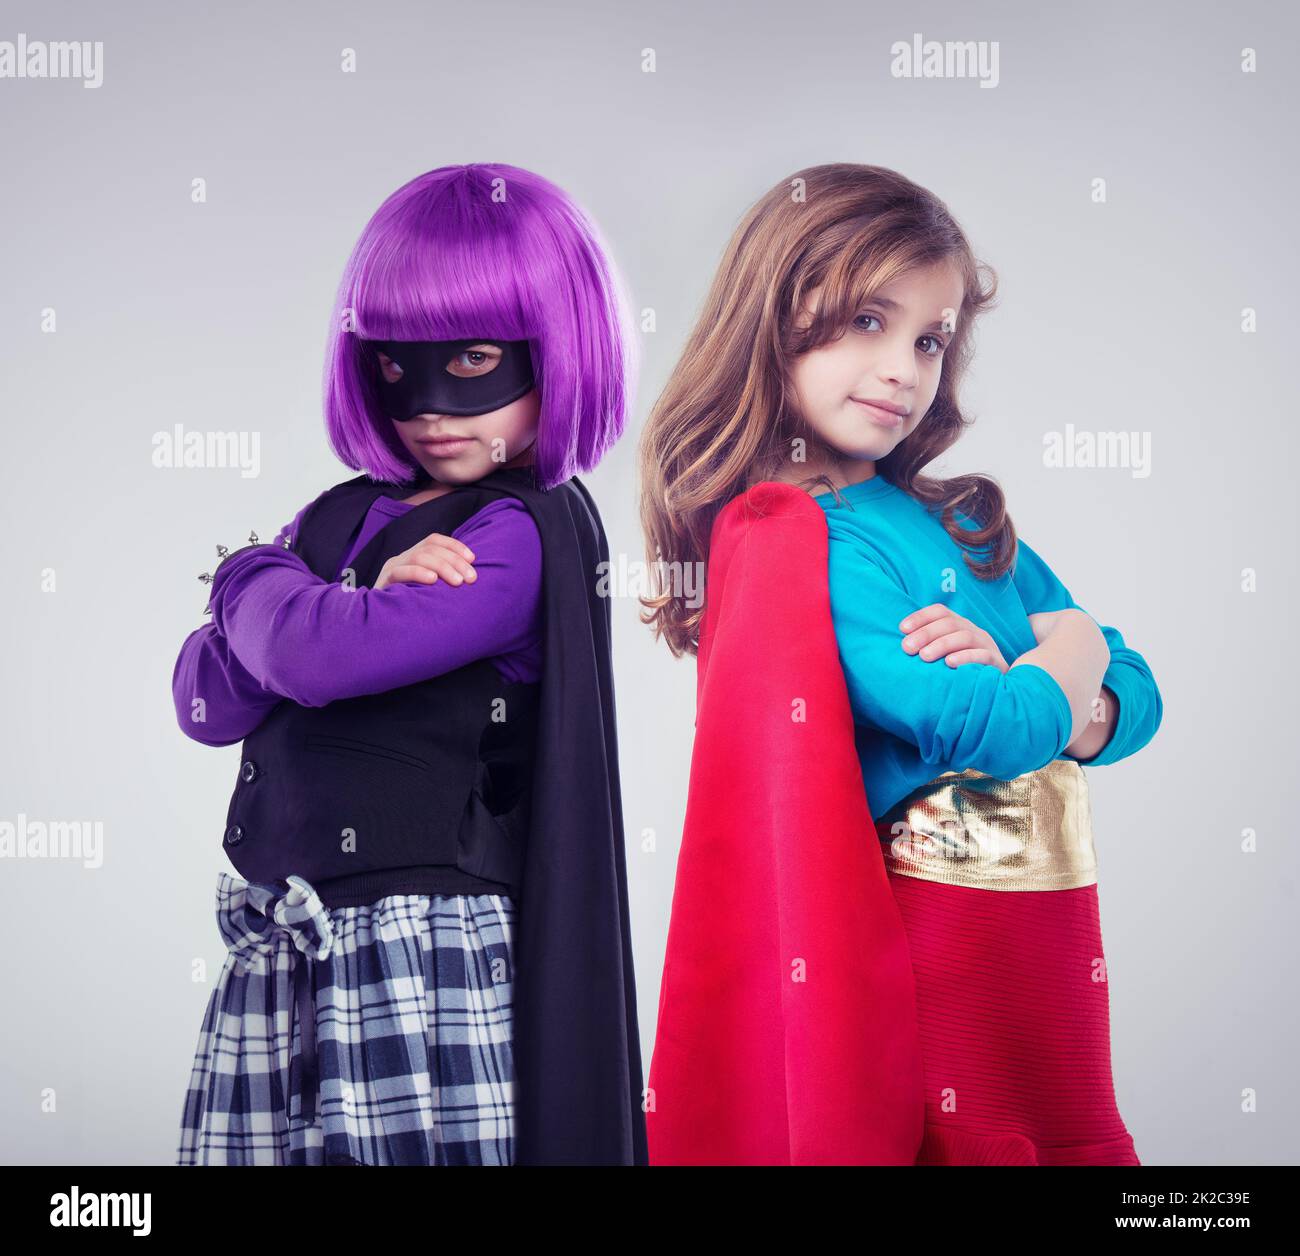 Non ogni ragazza vuole essere una piccola principessa. Un'immagine in studio di due bambine vestite come supereroe e criminale. Foto Stock